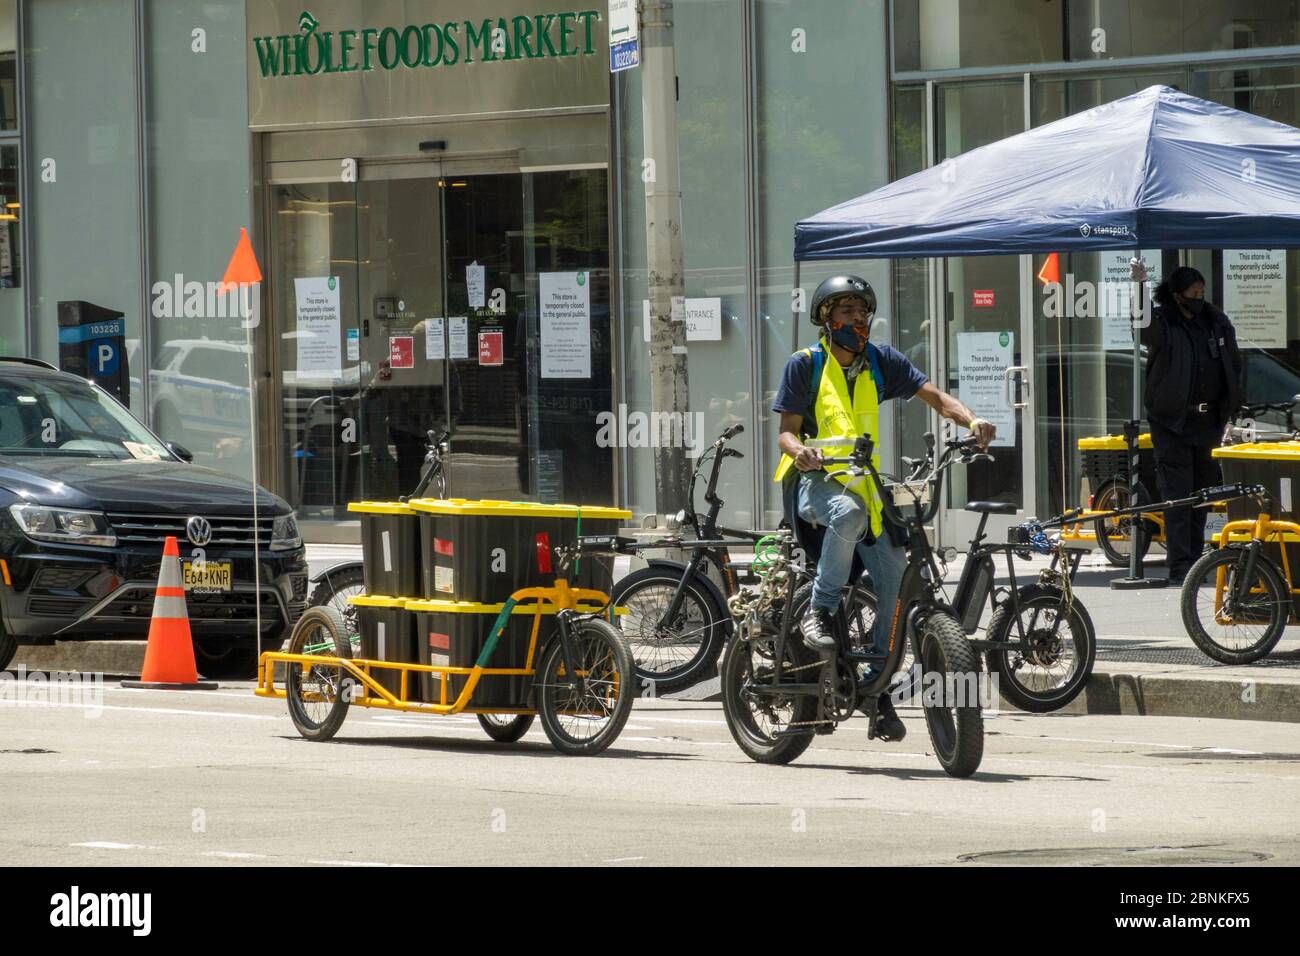 Whole Foods Market setzt Carla Cargo Anhänger mit E-Bike für die Lebensmittellieferung in Midtown Manhattan während der COVID-19 Pandemie in New York City, USA ein Stockfoto